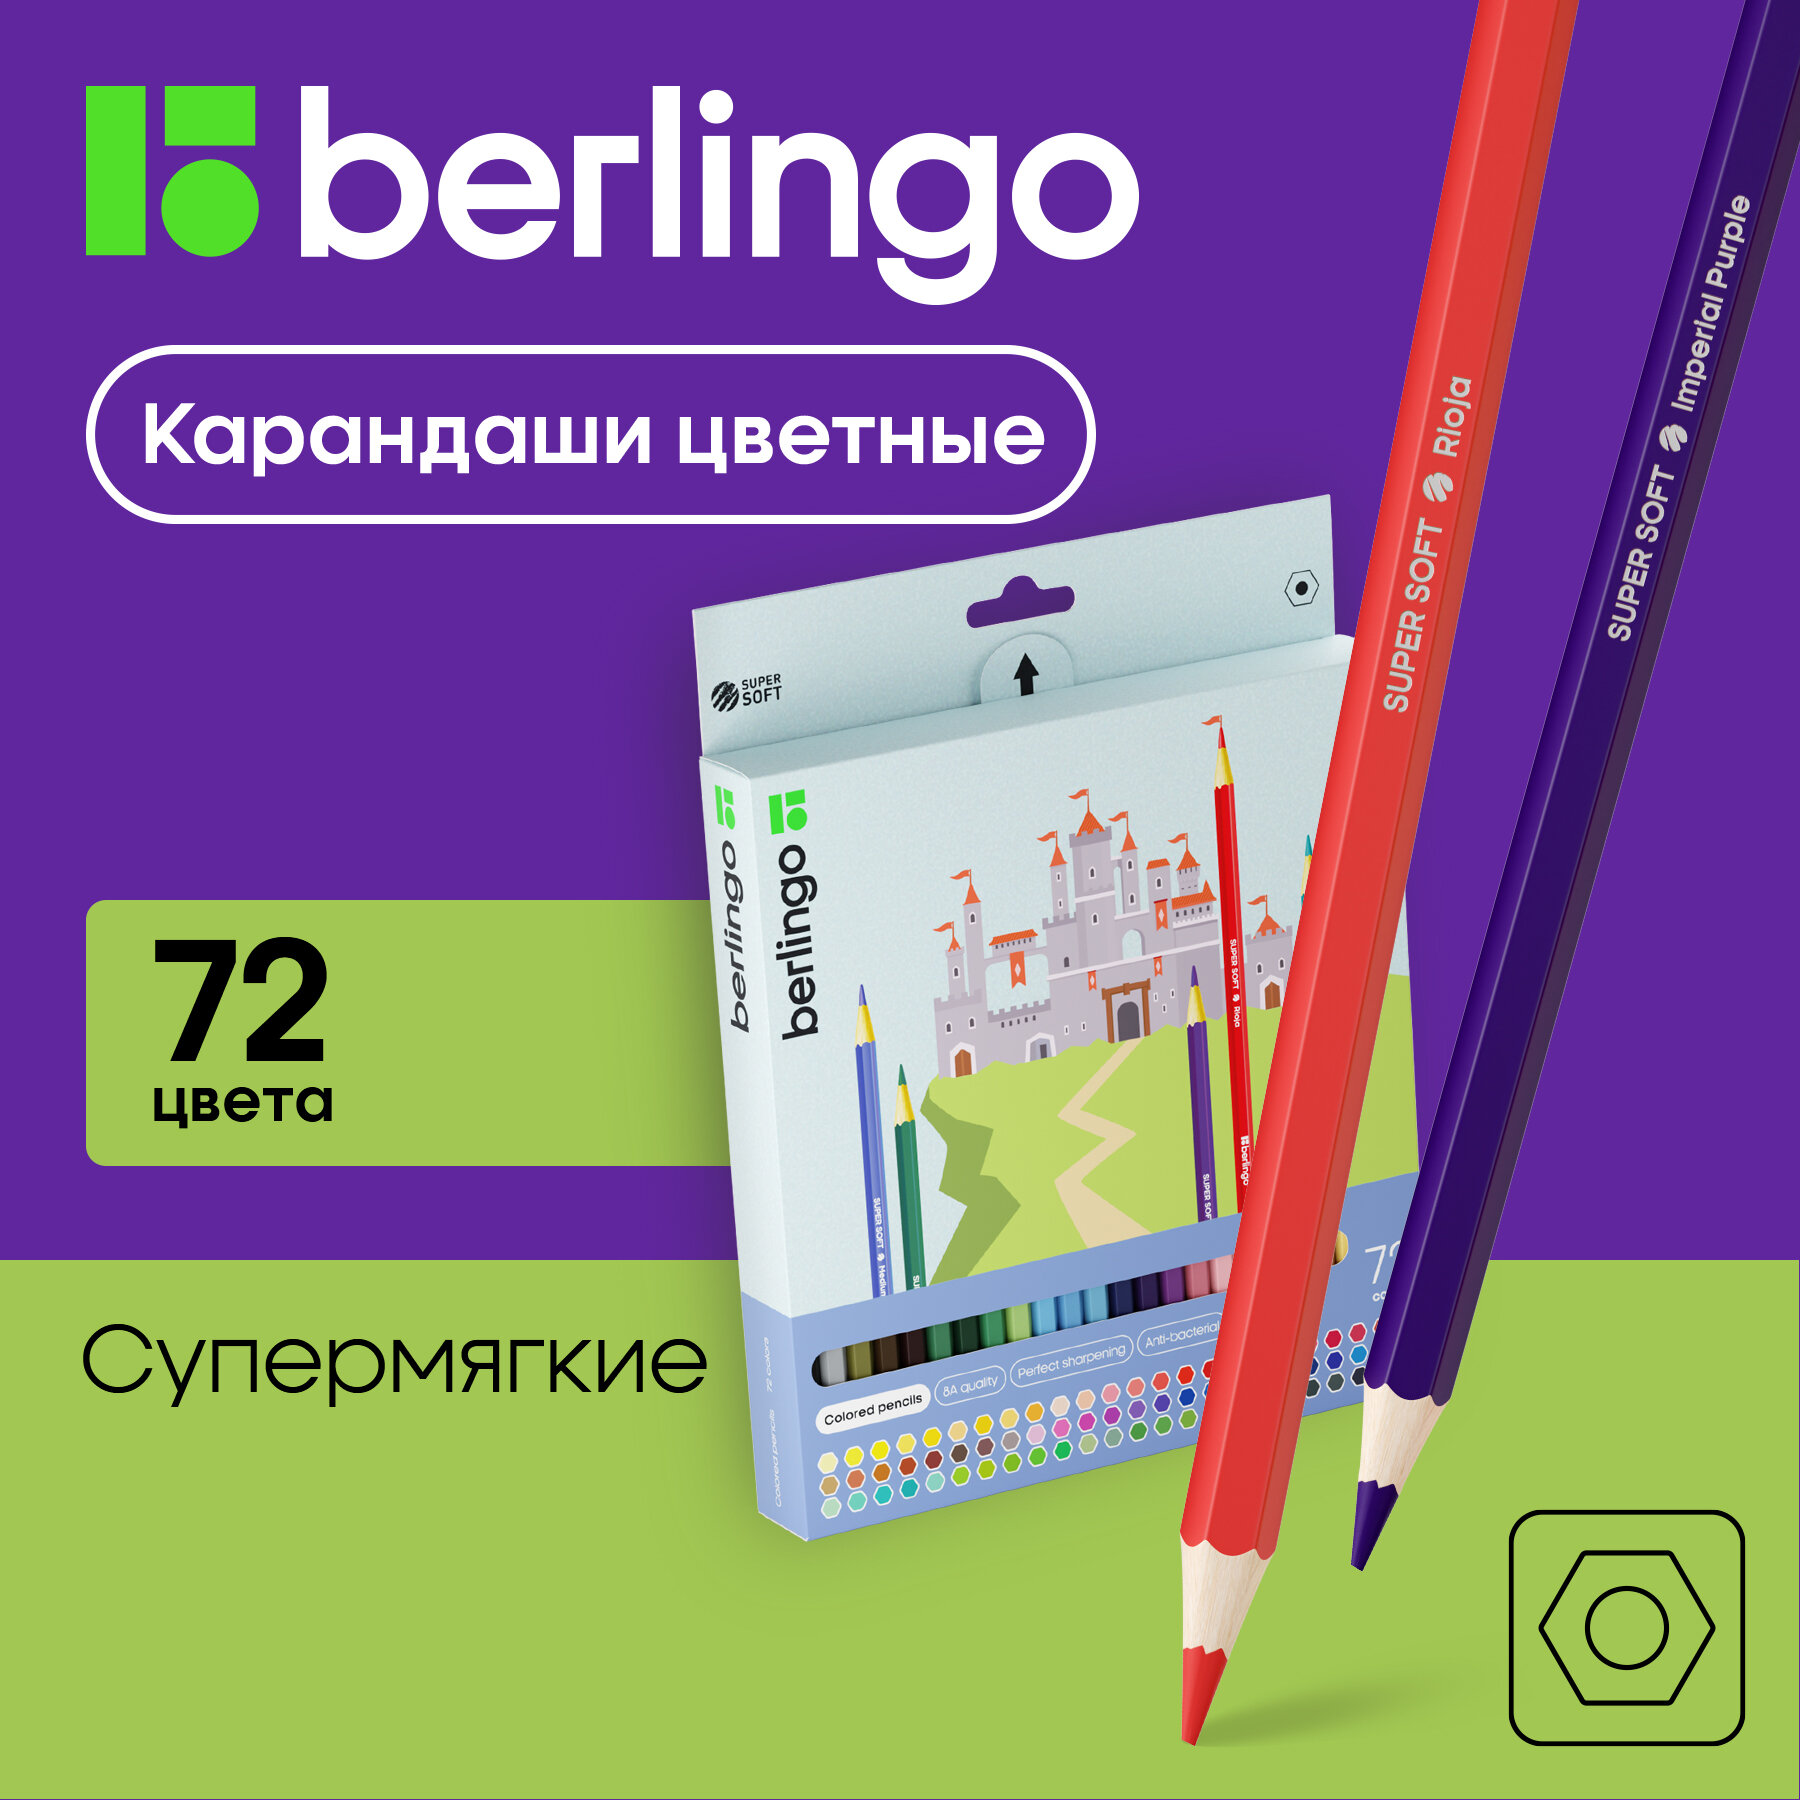 Цветные карандаши для школы 72 цвета, шестигранные / Набор цветных карандашей для рисования школьный Berlingo "SuperSoft. Замки"